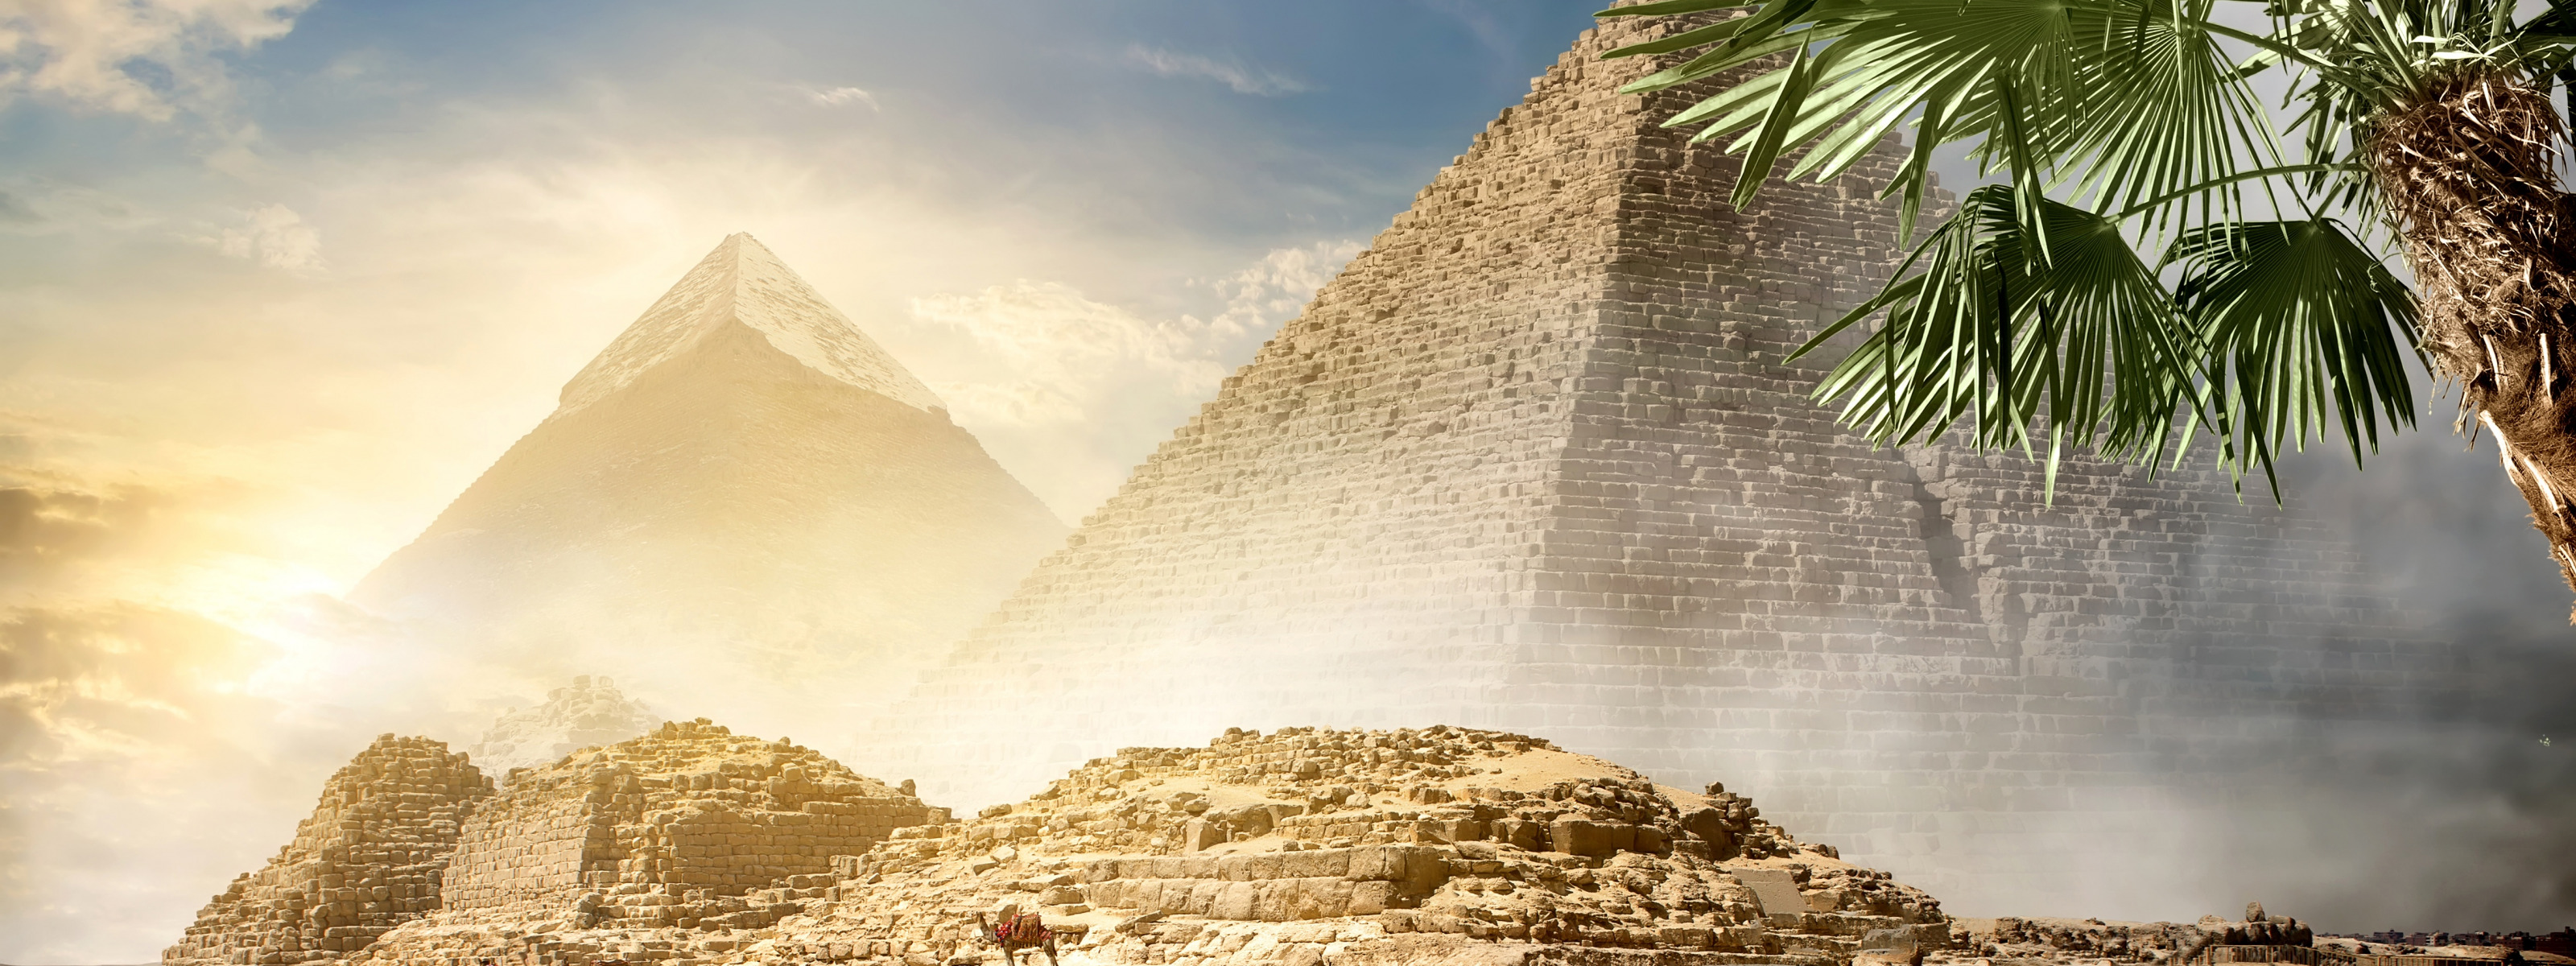 Каир пирамиды пальмы